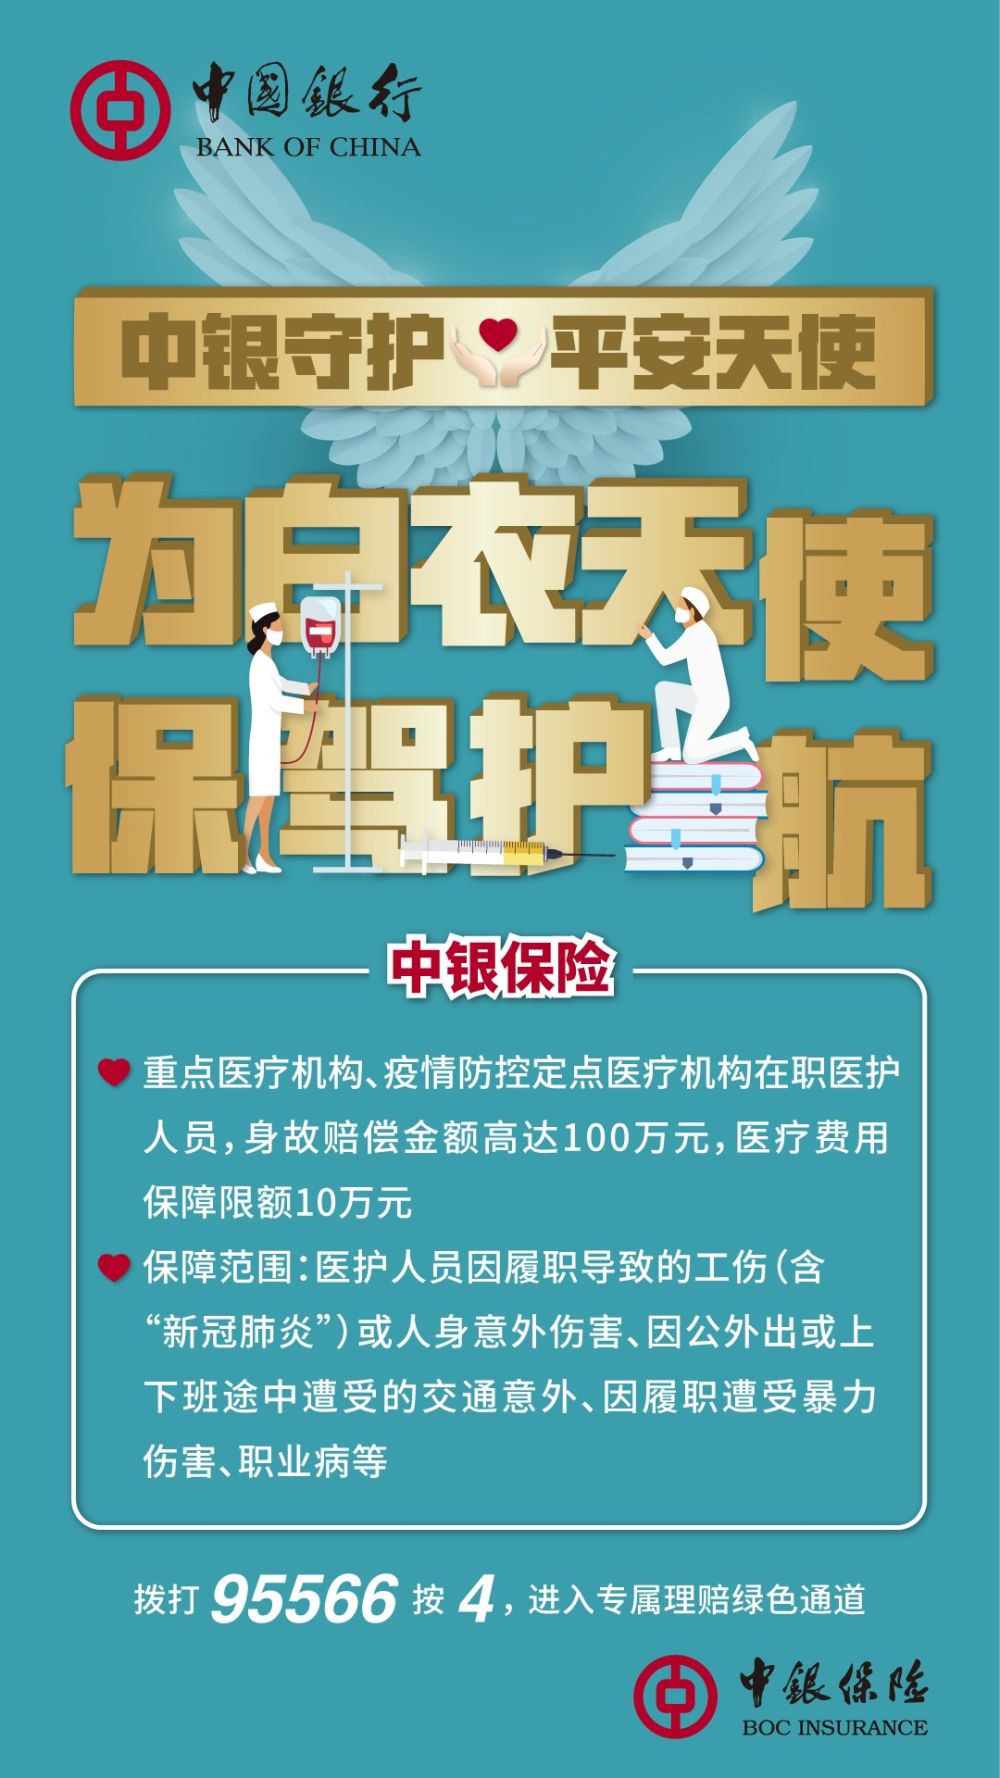 中国银行向抗疫一线医护人员赠送保险12万份